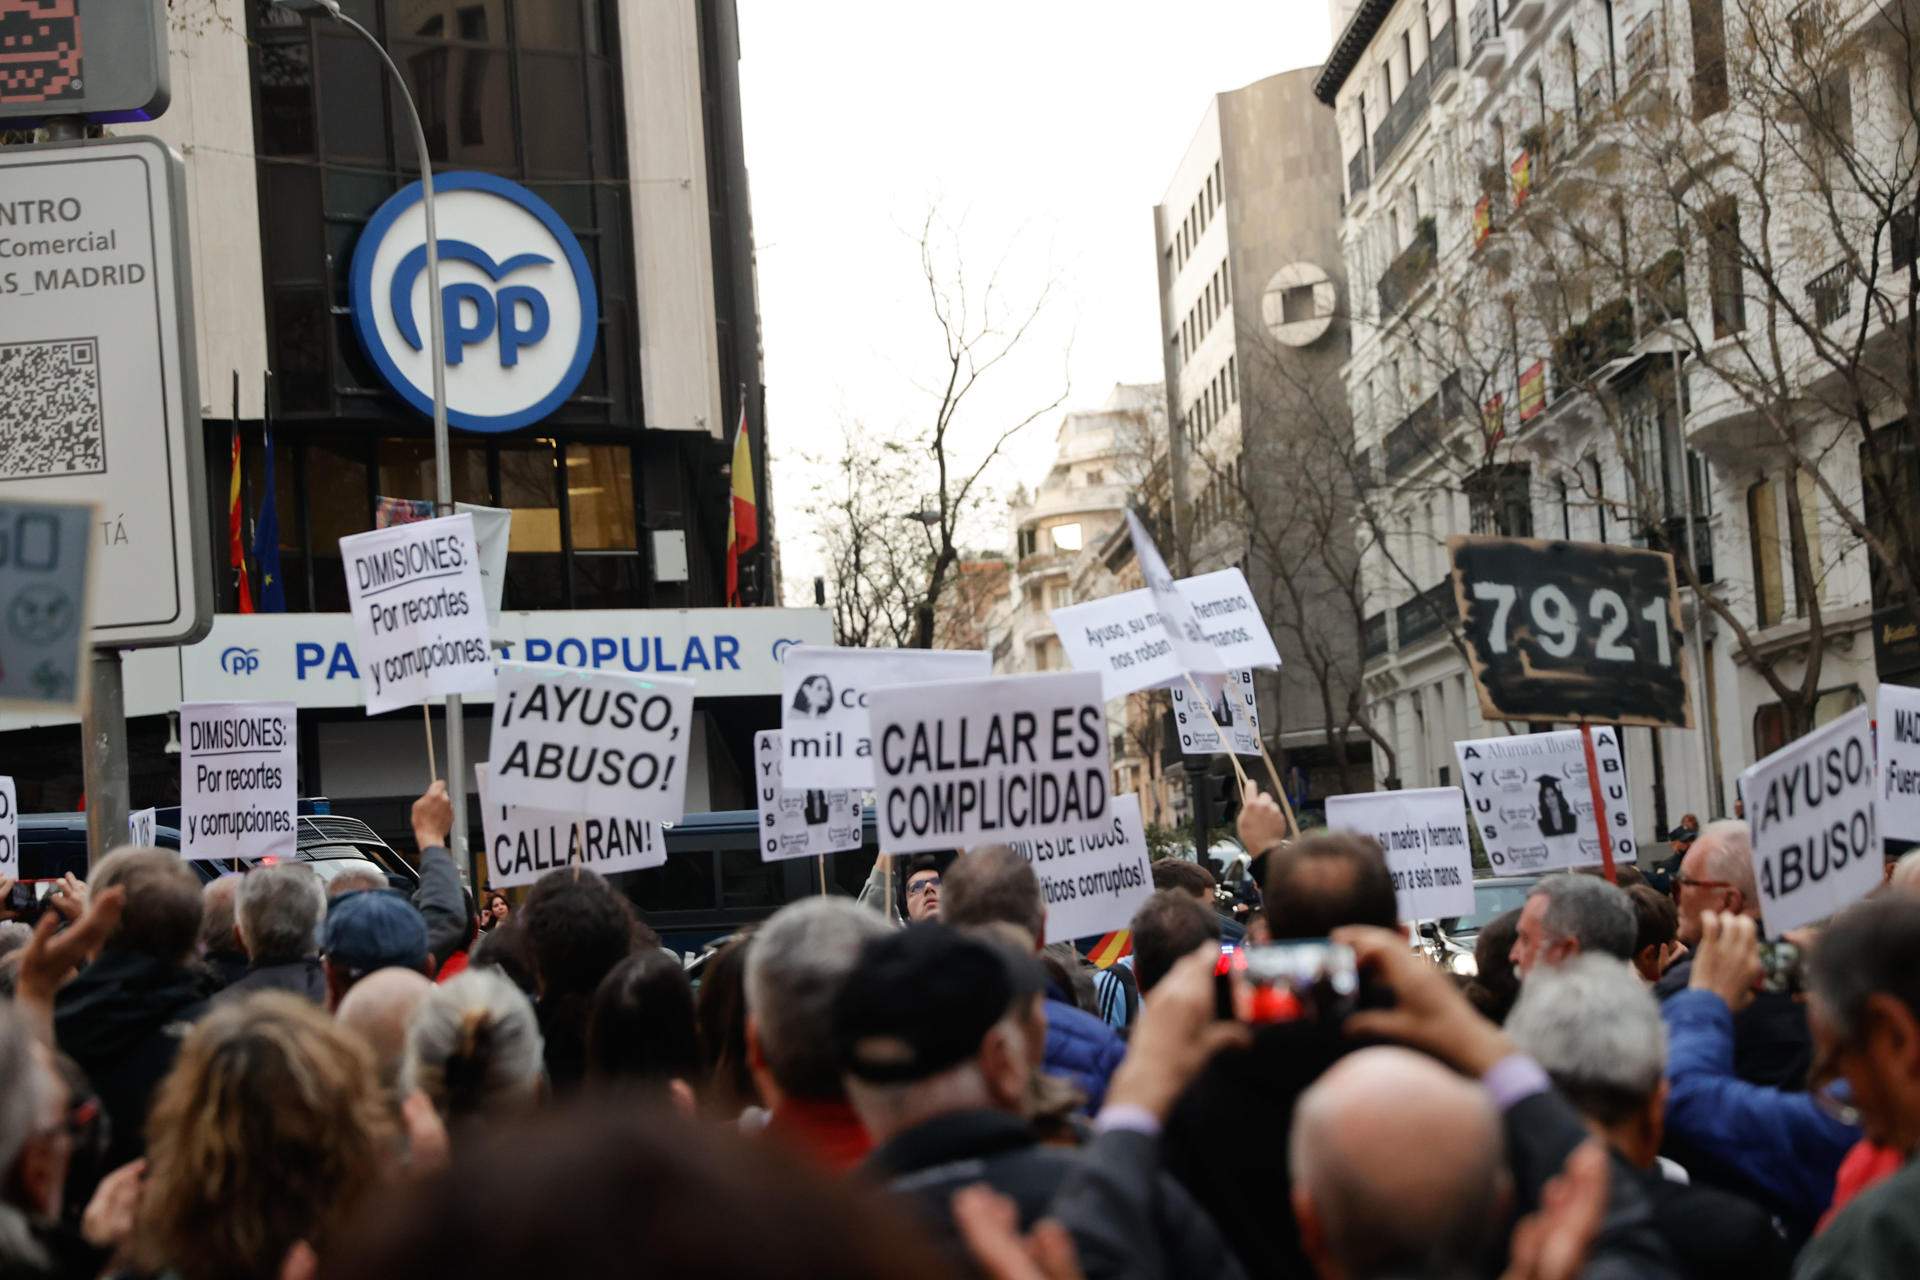 Protesta contra Ayuso a les portes de la seu del PP: “Assassina, corrupta i lladre”